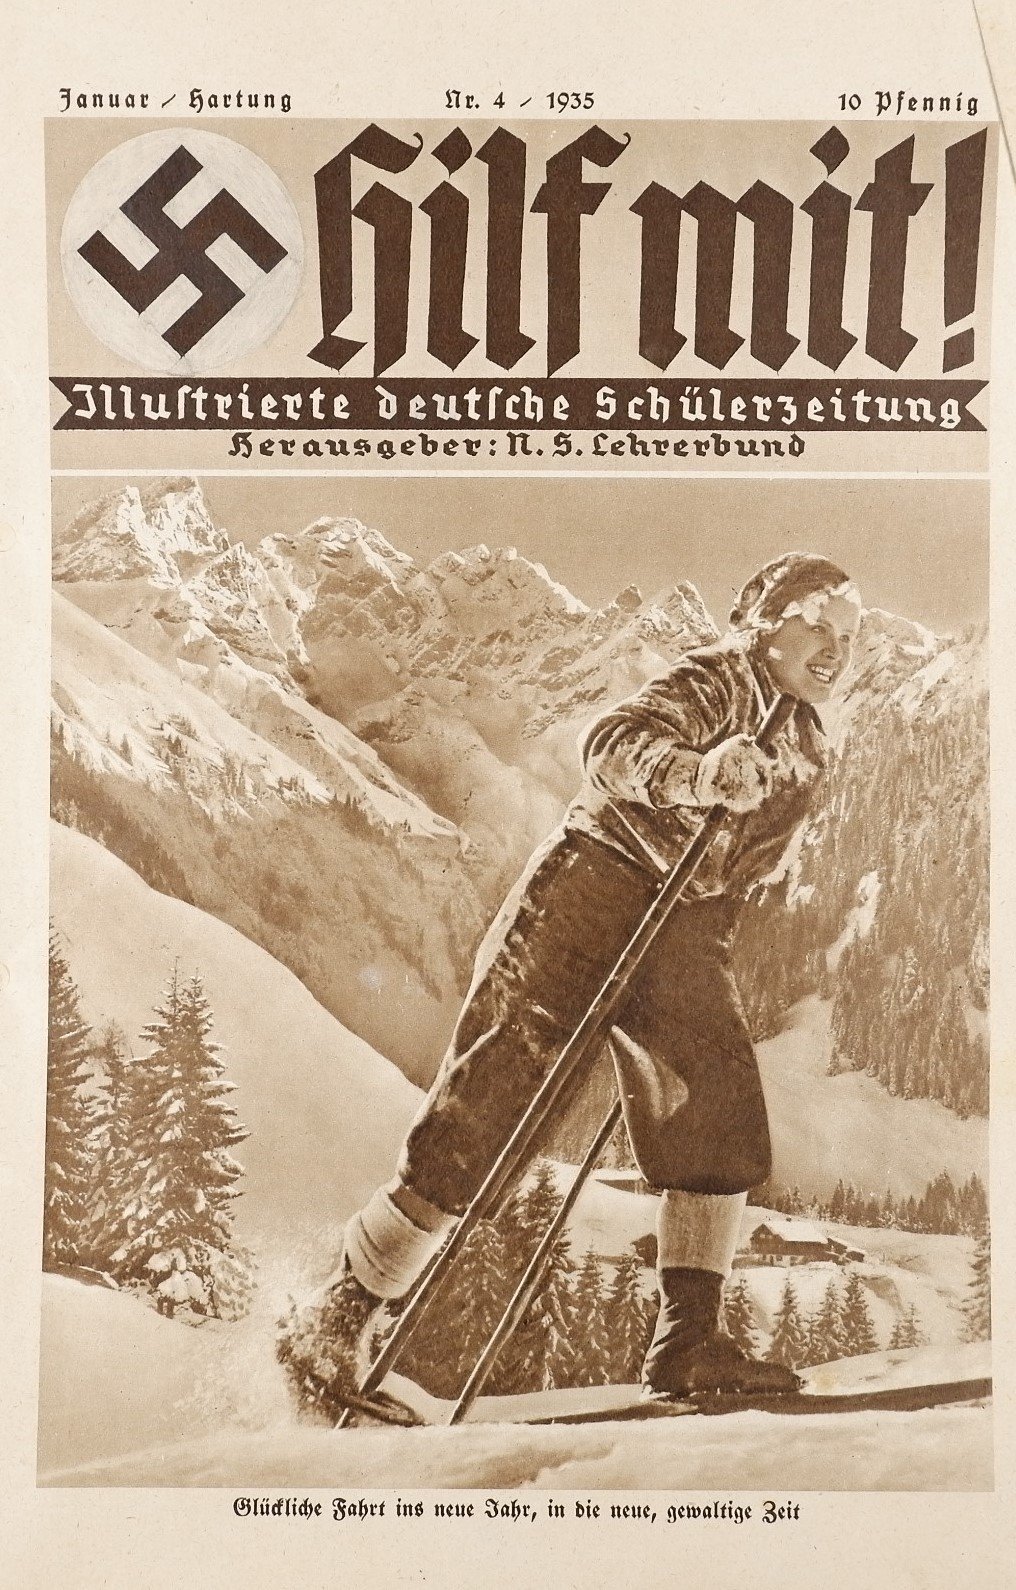 Hilf mit! - Illustrierte deutsche Schülerzeitung 4/1935 (Volkskunde- und Freilichtmuseum Roscheider Hof RR-F)